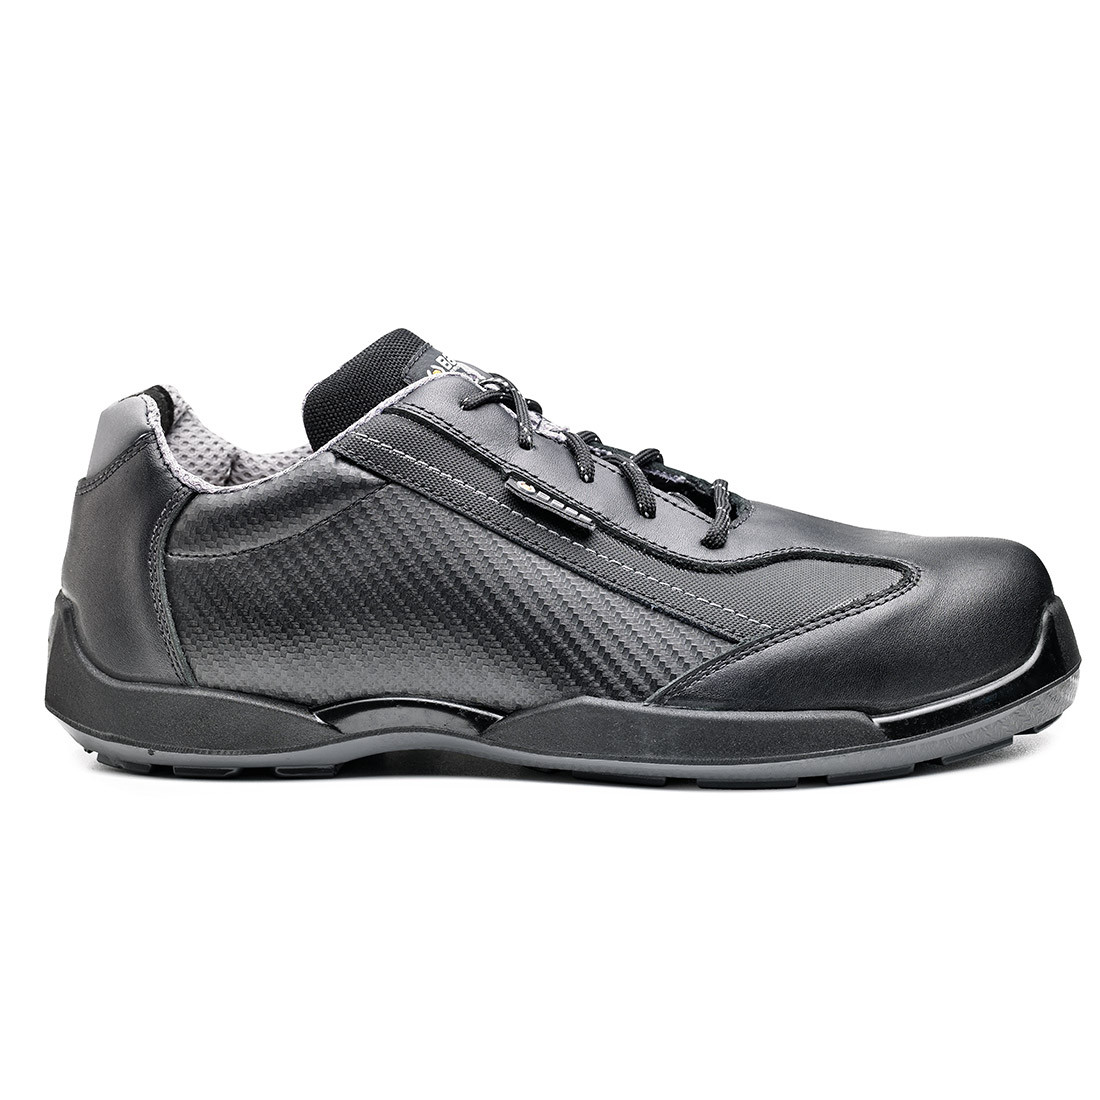 Pantofi Diving S3 SRC - Incaltaminte de protectie | Bocanci, Pantofi, Sandale, Cizme